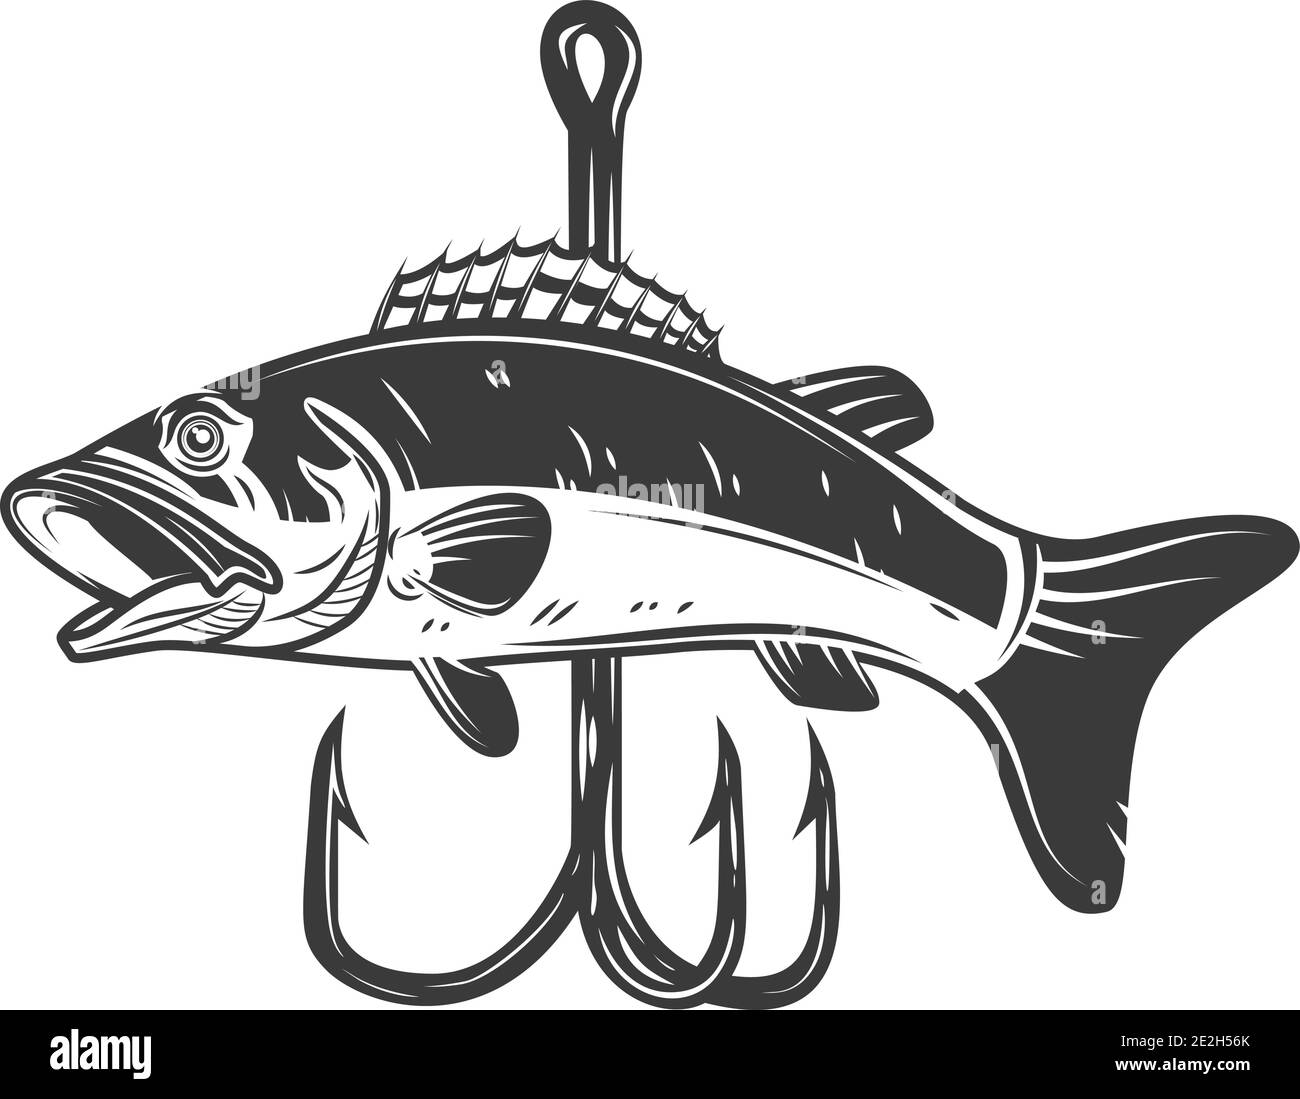 https://c8.alamy.com/comp/2E2H56K/illustration-of-bass-and-fishing-hook-design-element-for-postercard-banner-sign-emblem-vector-illustration-2E2H56K.jpg